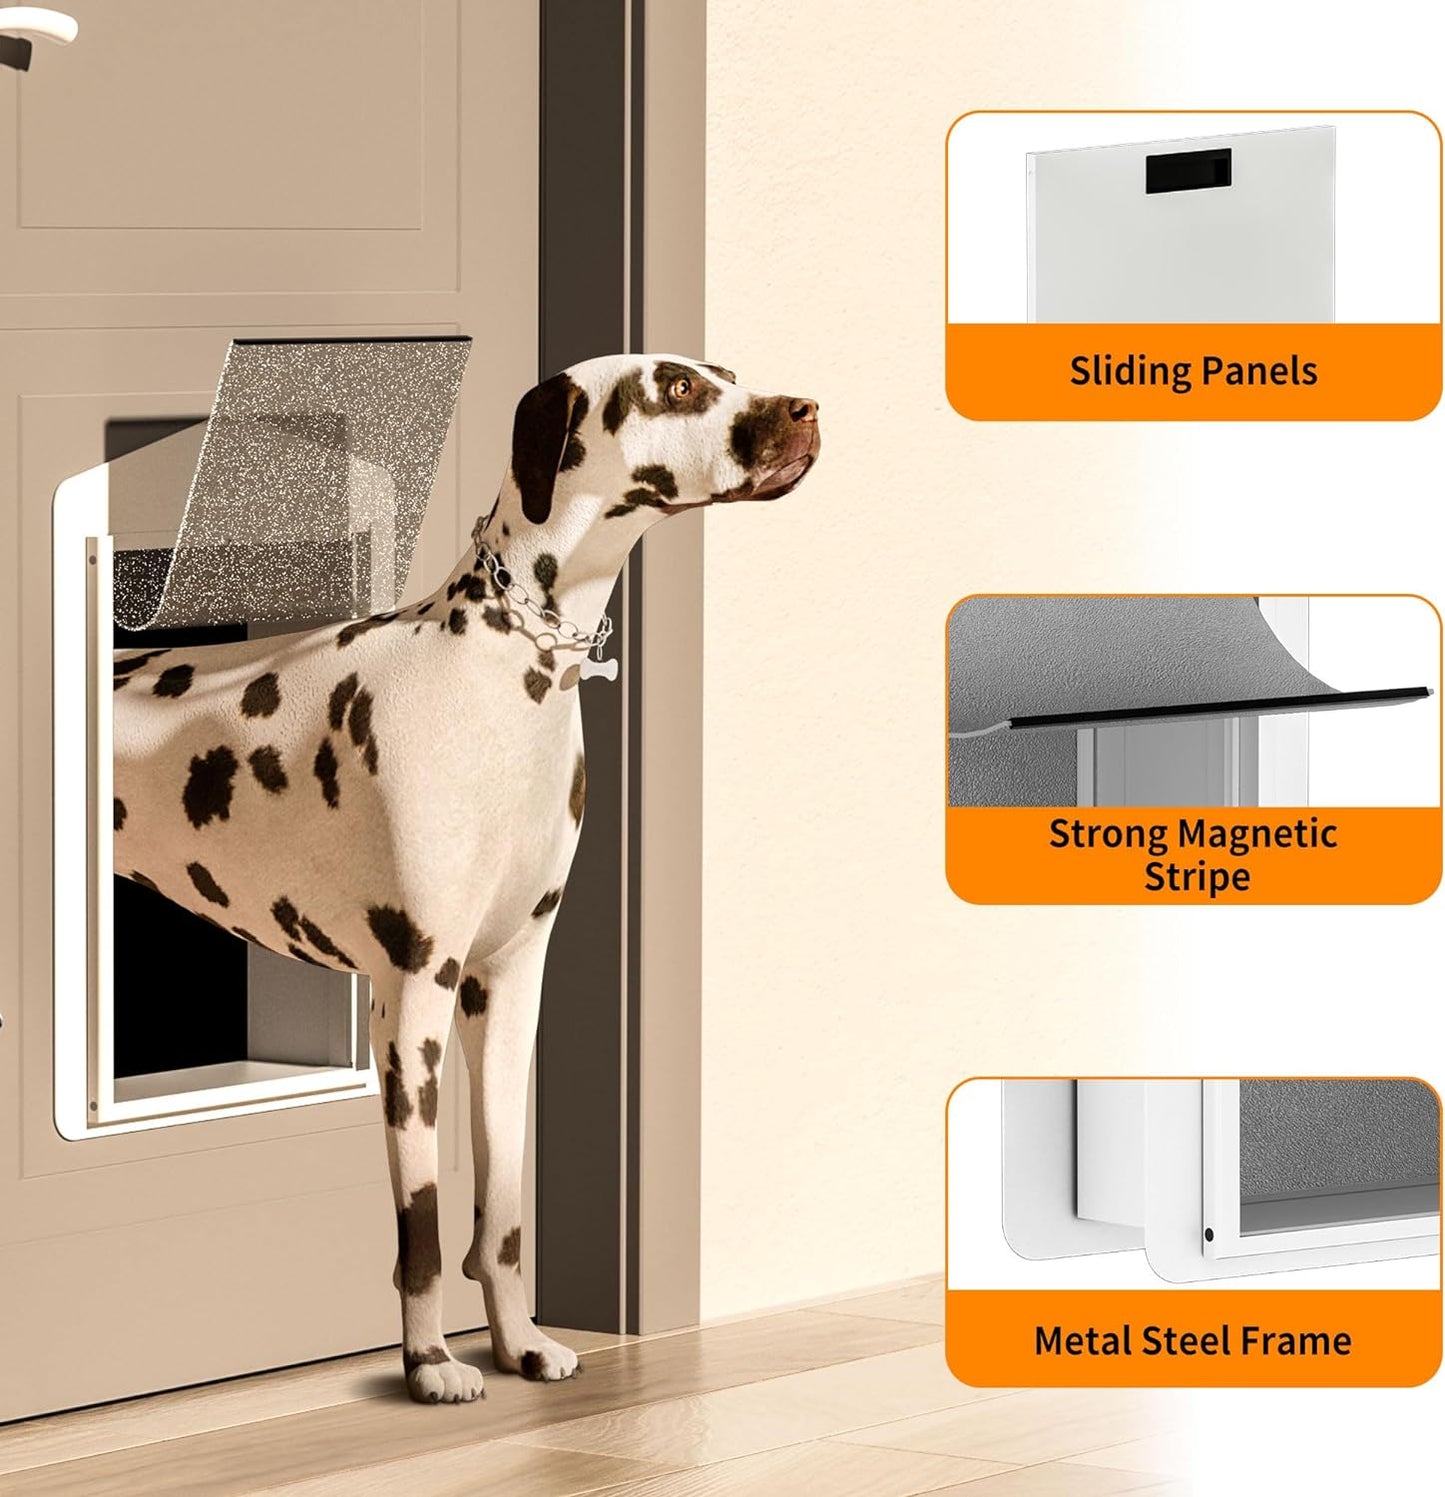 Stainless Steel/Aluminum Alloy Dog Door w/Vinyl Door for Dogs up to 100lbs